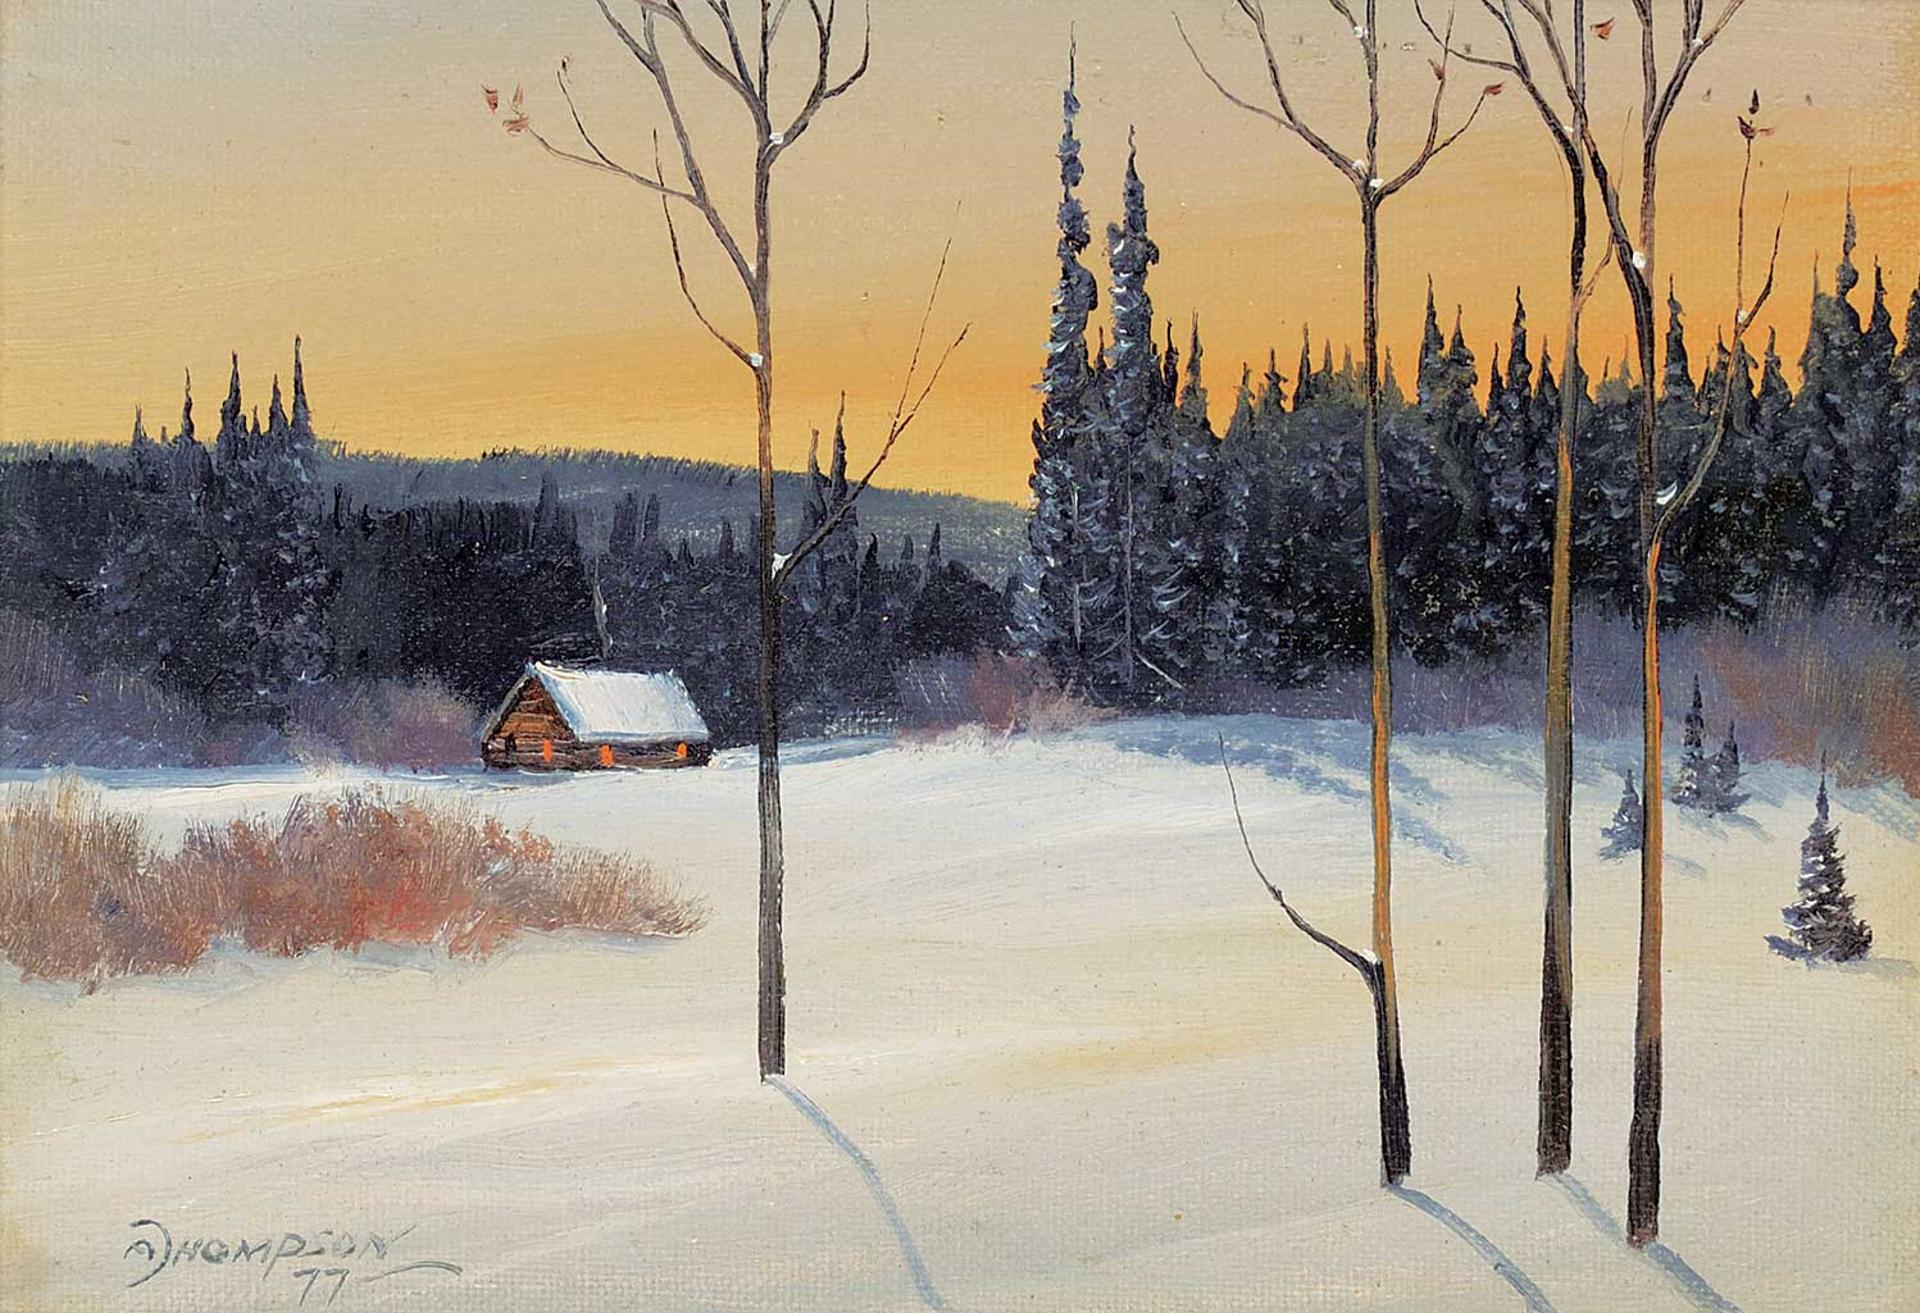 Allan Robert Thompson (1949) - Untitled - Winter Dusk